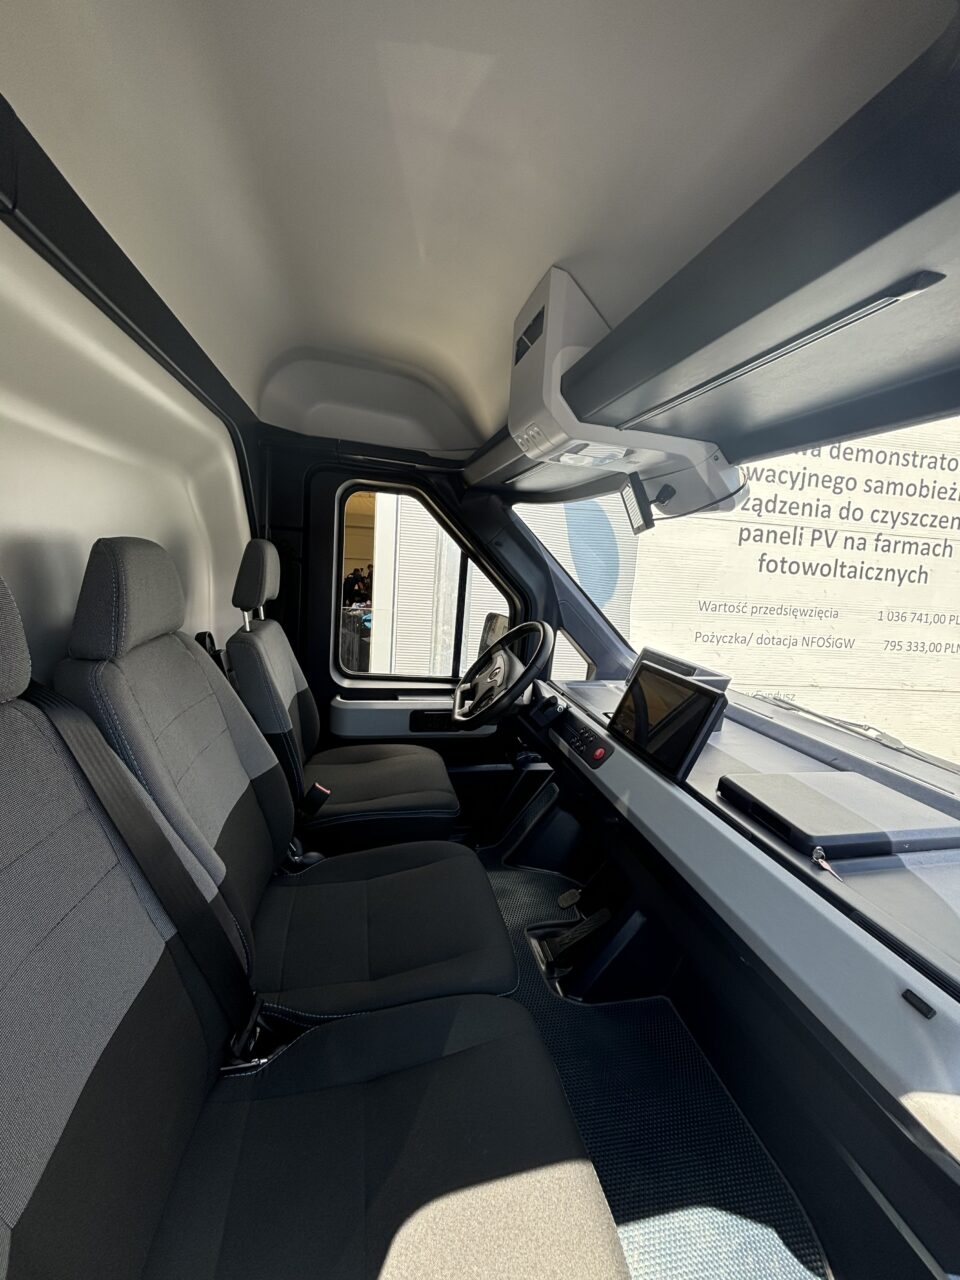 Wnętrze kabiny samochodu dostawczego z trzema miejscami siedzącymi, kierownicą oraz ekranem dotykowym na desce rozdzielczej.